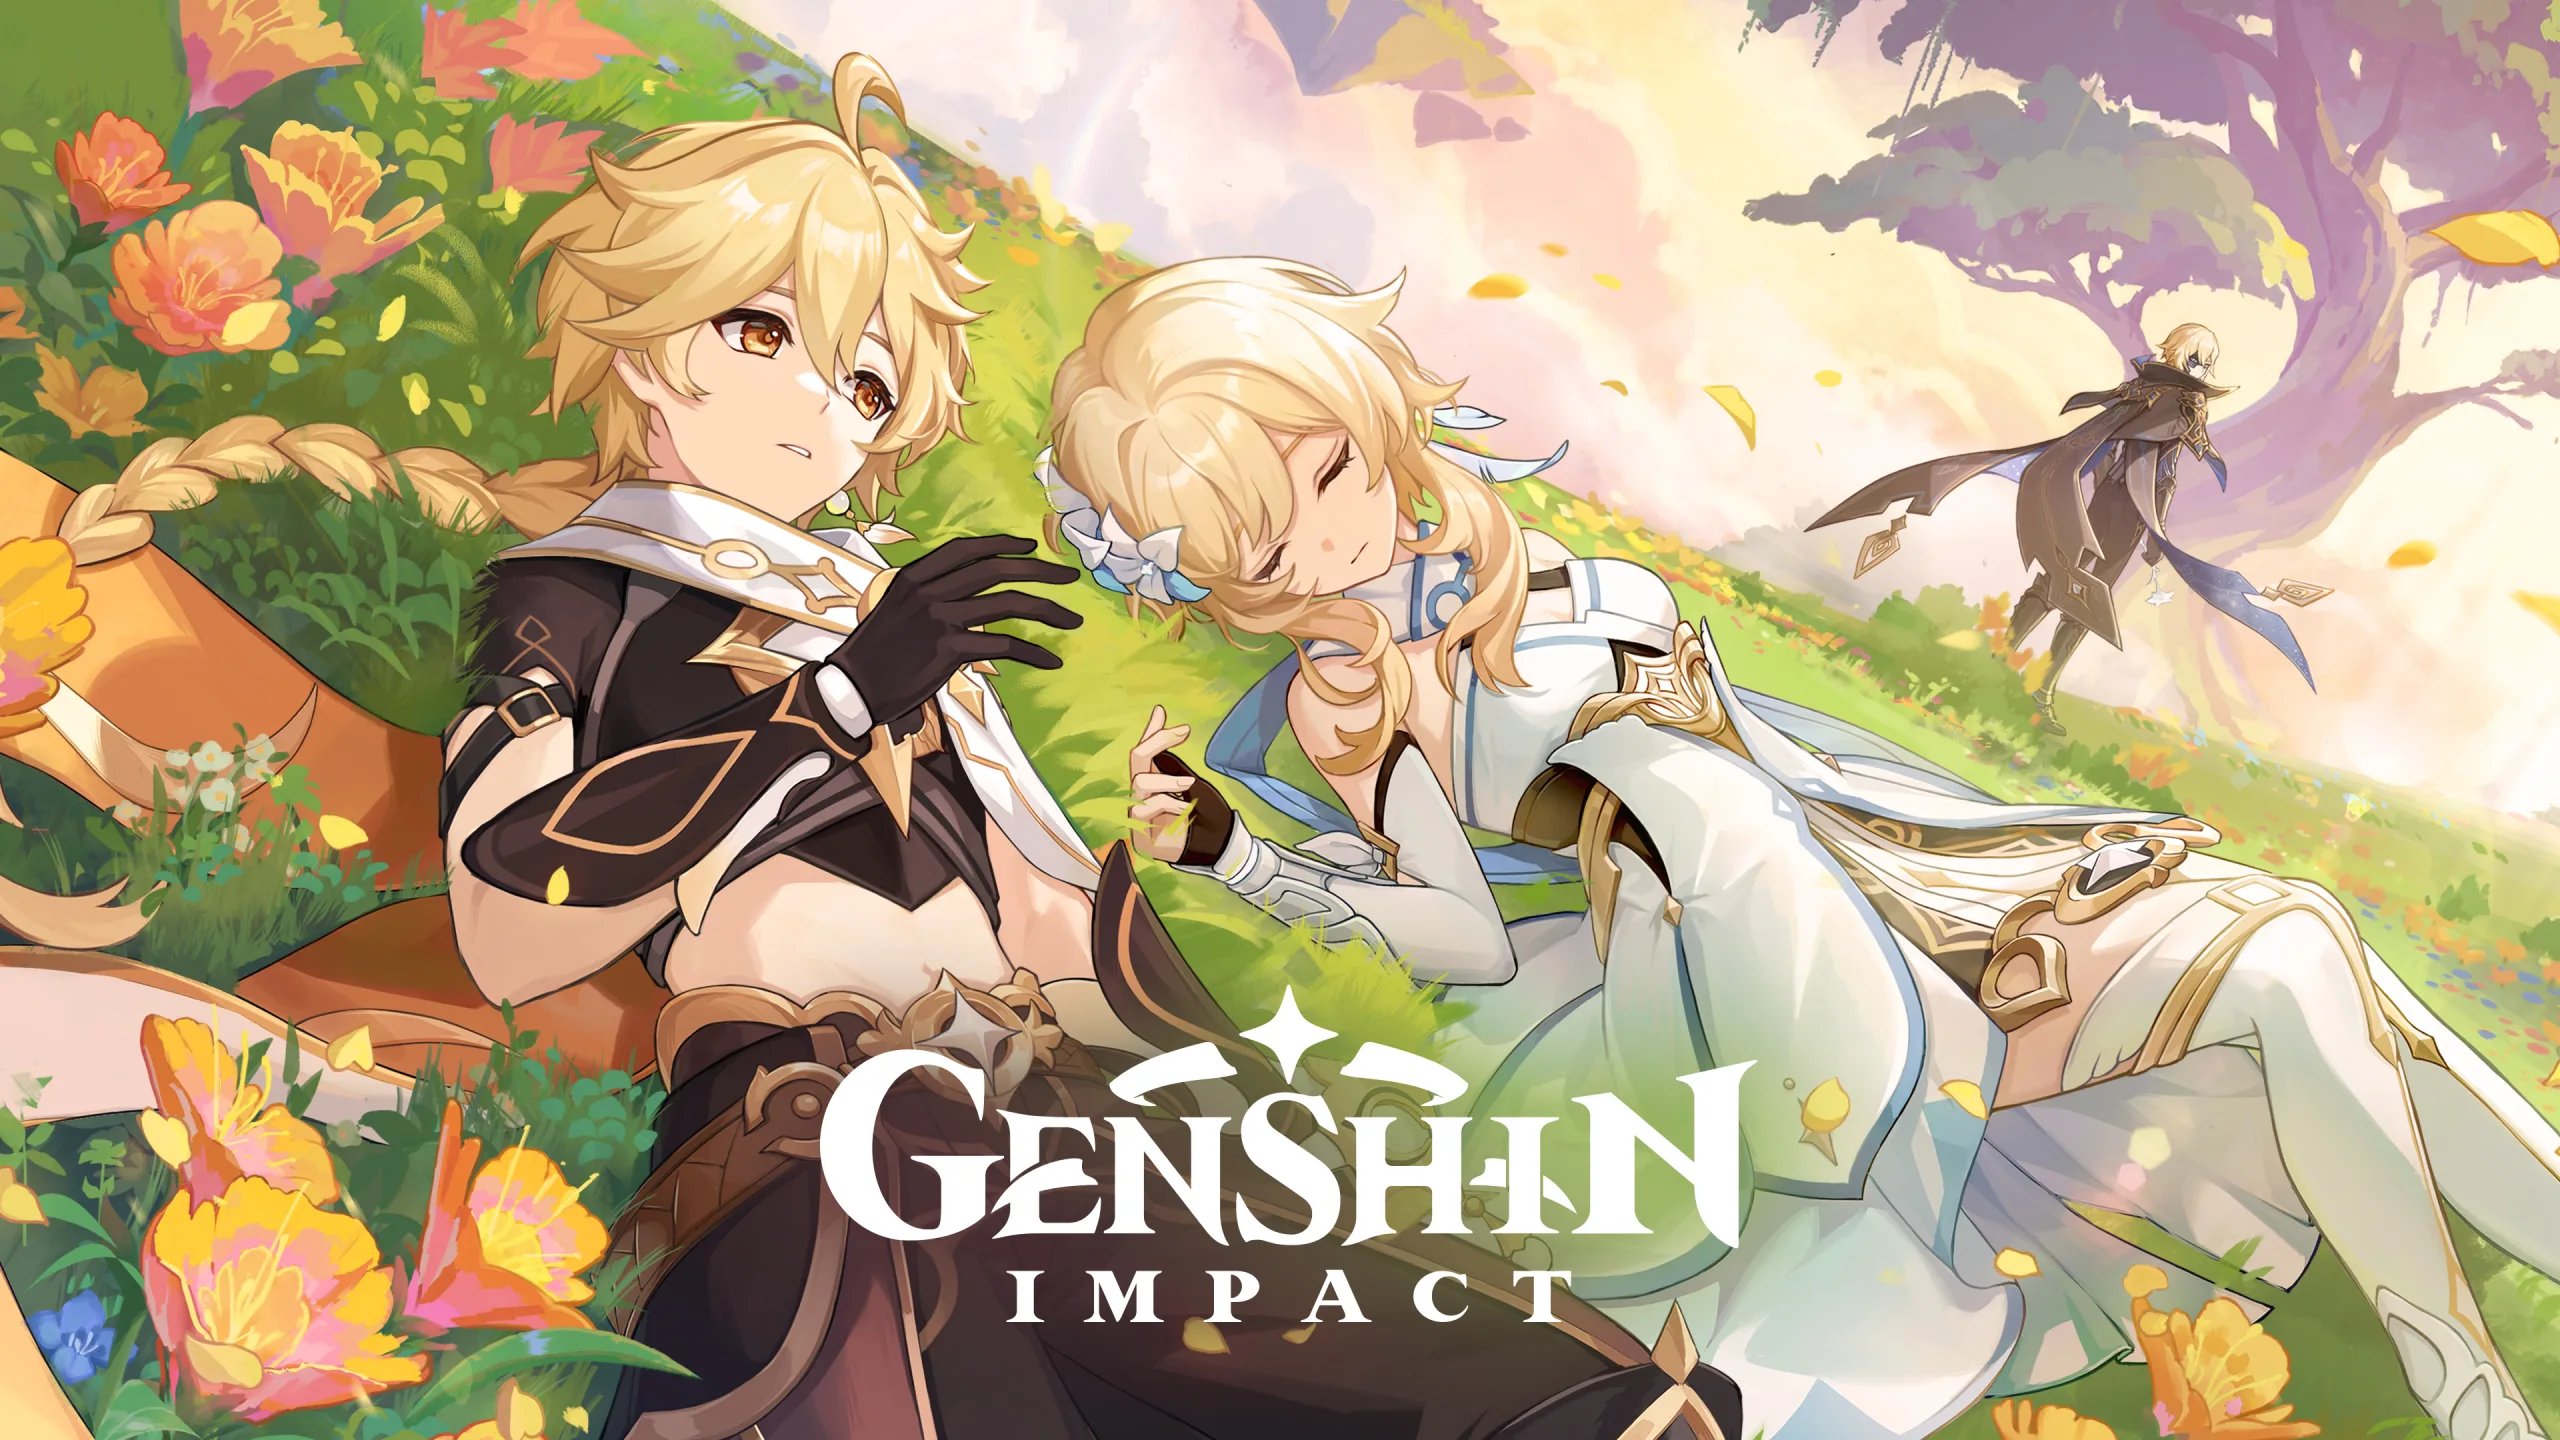 El nuevo tráiler de Genshin Impact muestra que la nación Natlan llegará pronto